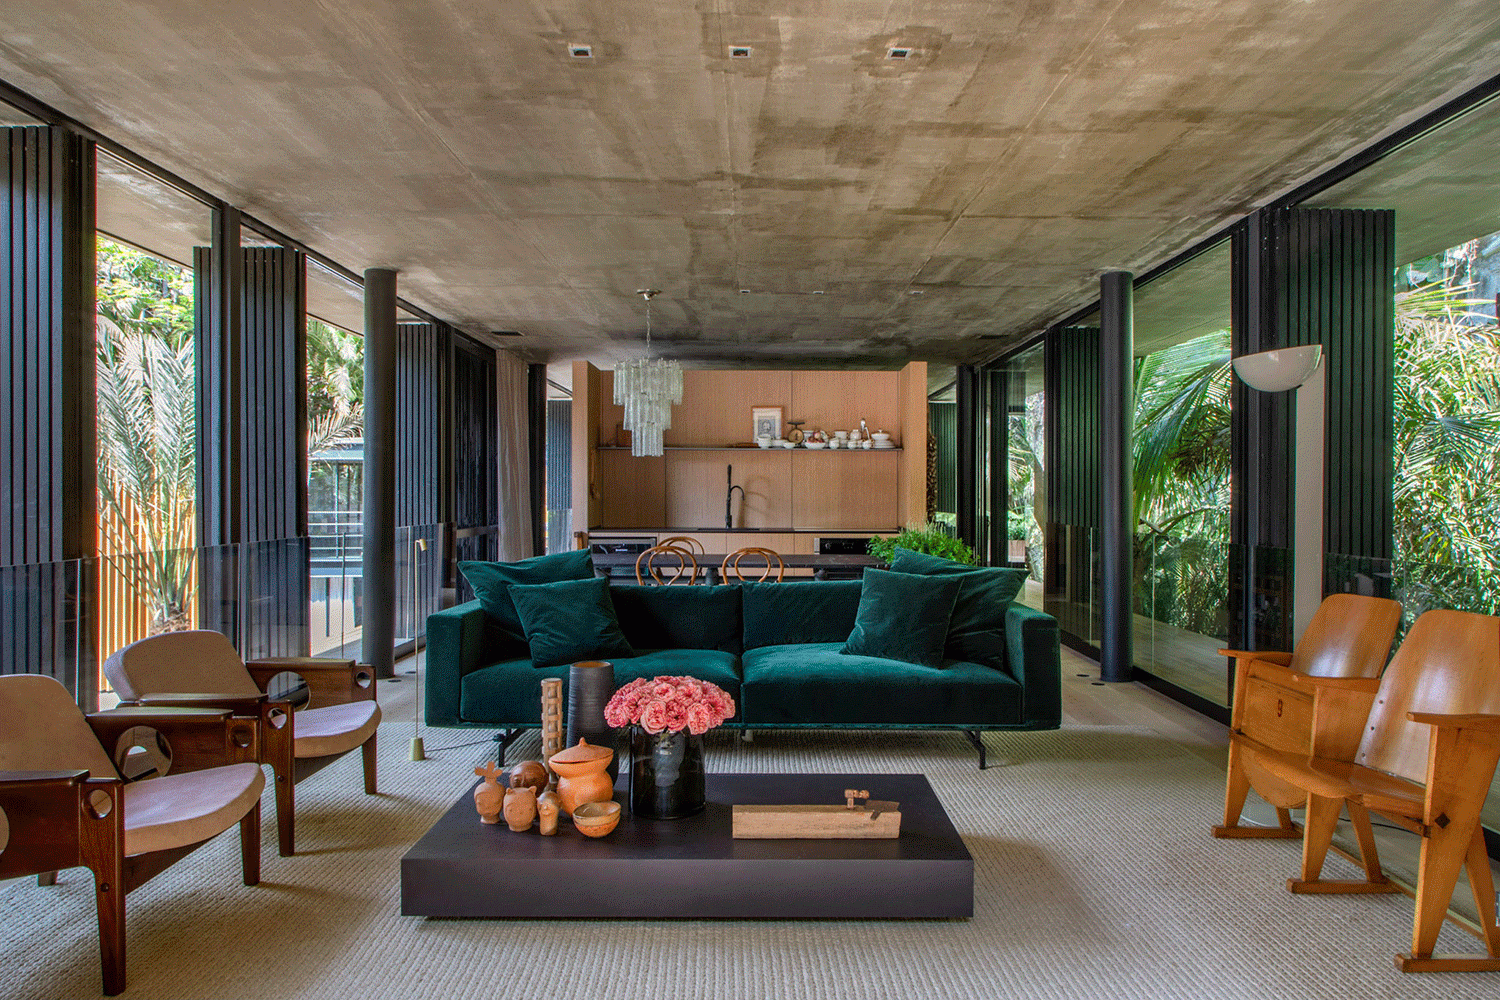 sofá verde veludo bruno carvalho camila avelar bc arquitetos casacor rio de janeiro 2018 decoração ambientes